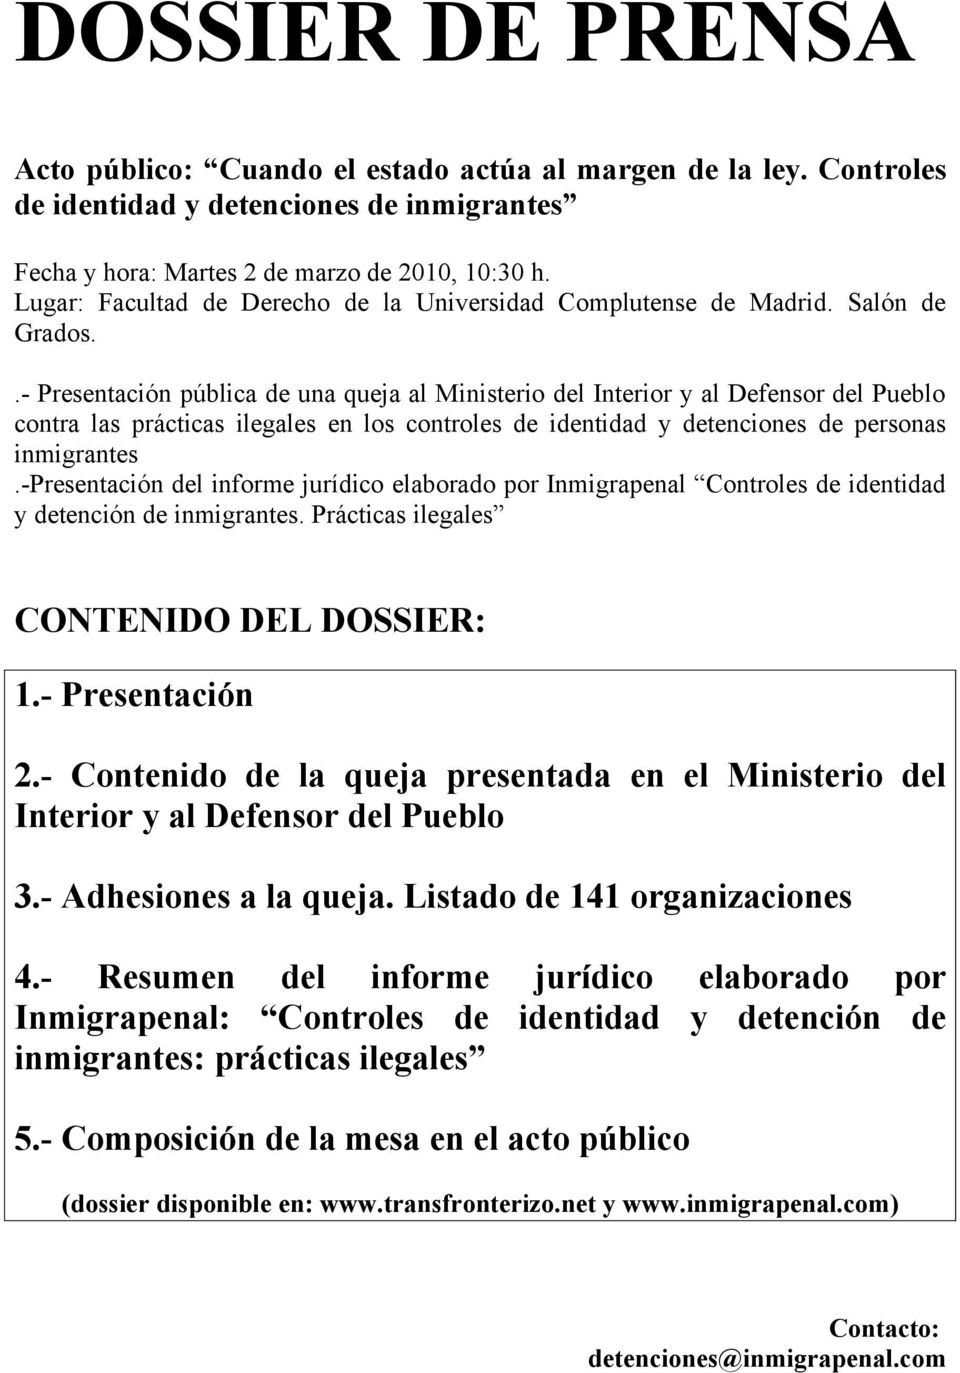 .- Presentación pública de una queja al Ministerio del Interior y al Defensor del Pueblo contra las prácticas ilegales en los controles de identidad y detenciones de personas inmigrantes.